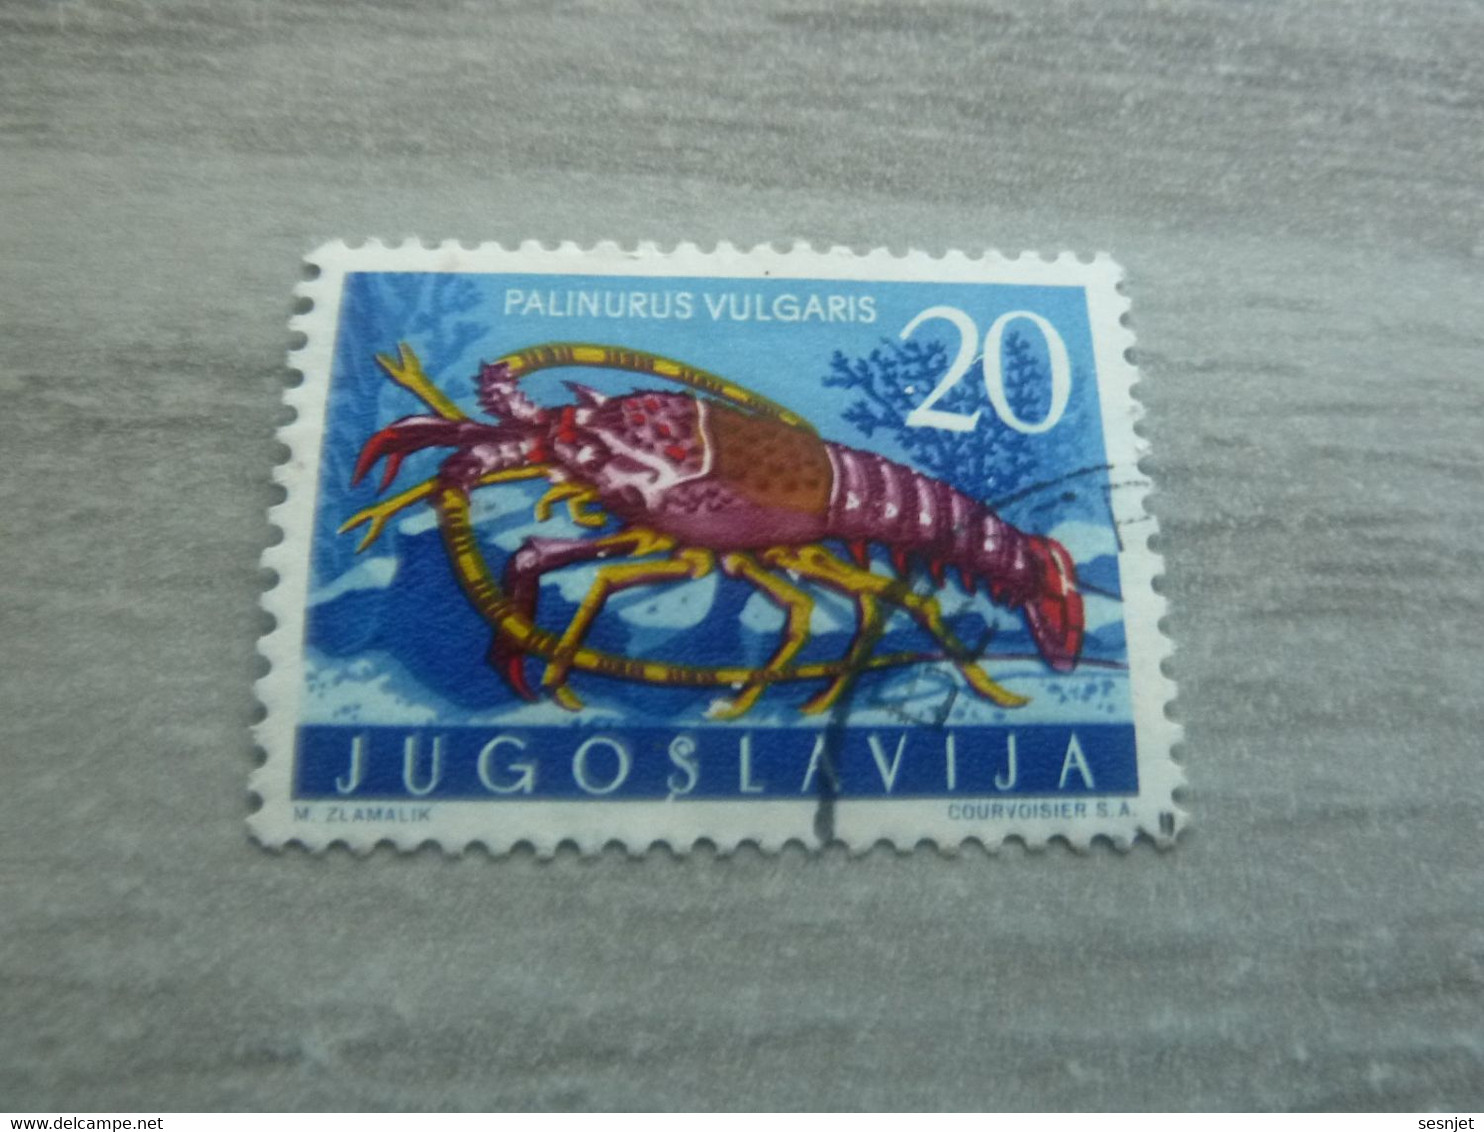 Jugoslavija - Palinurus Vulgaris - Courvoisier - Val 20 - Multicolore - Oblitéré - Année 1971 - - Oblitérés